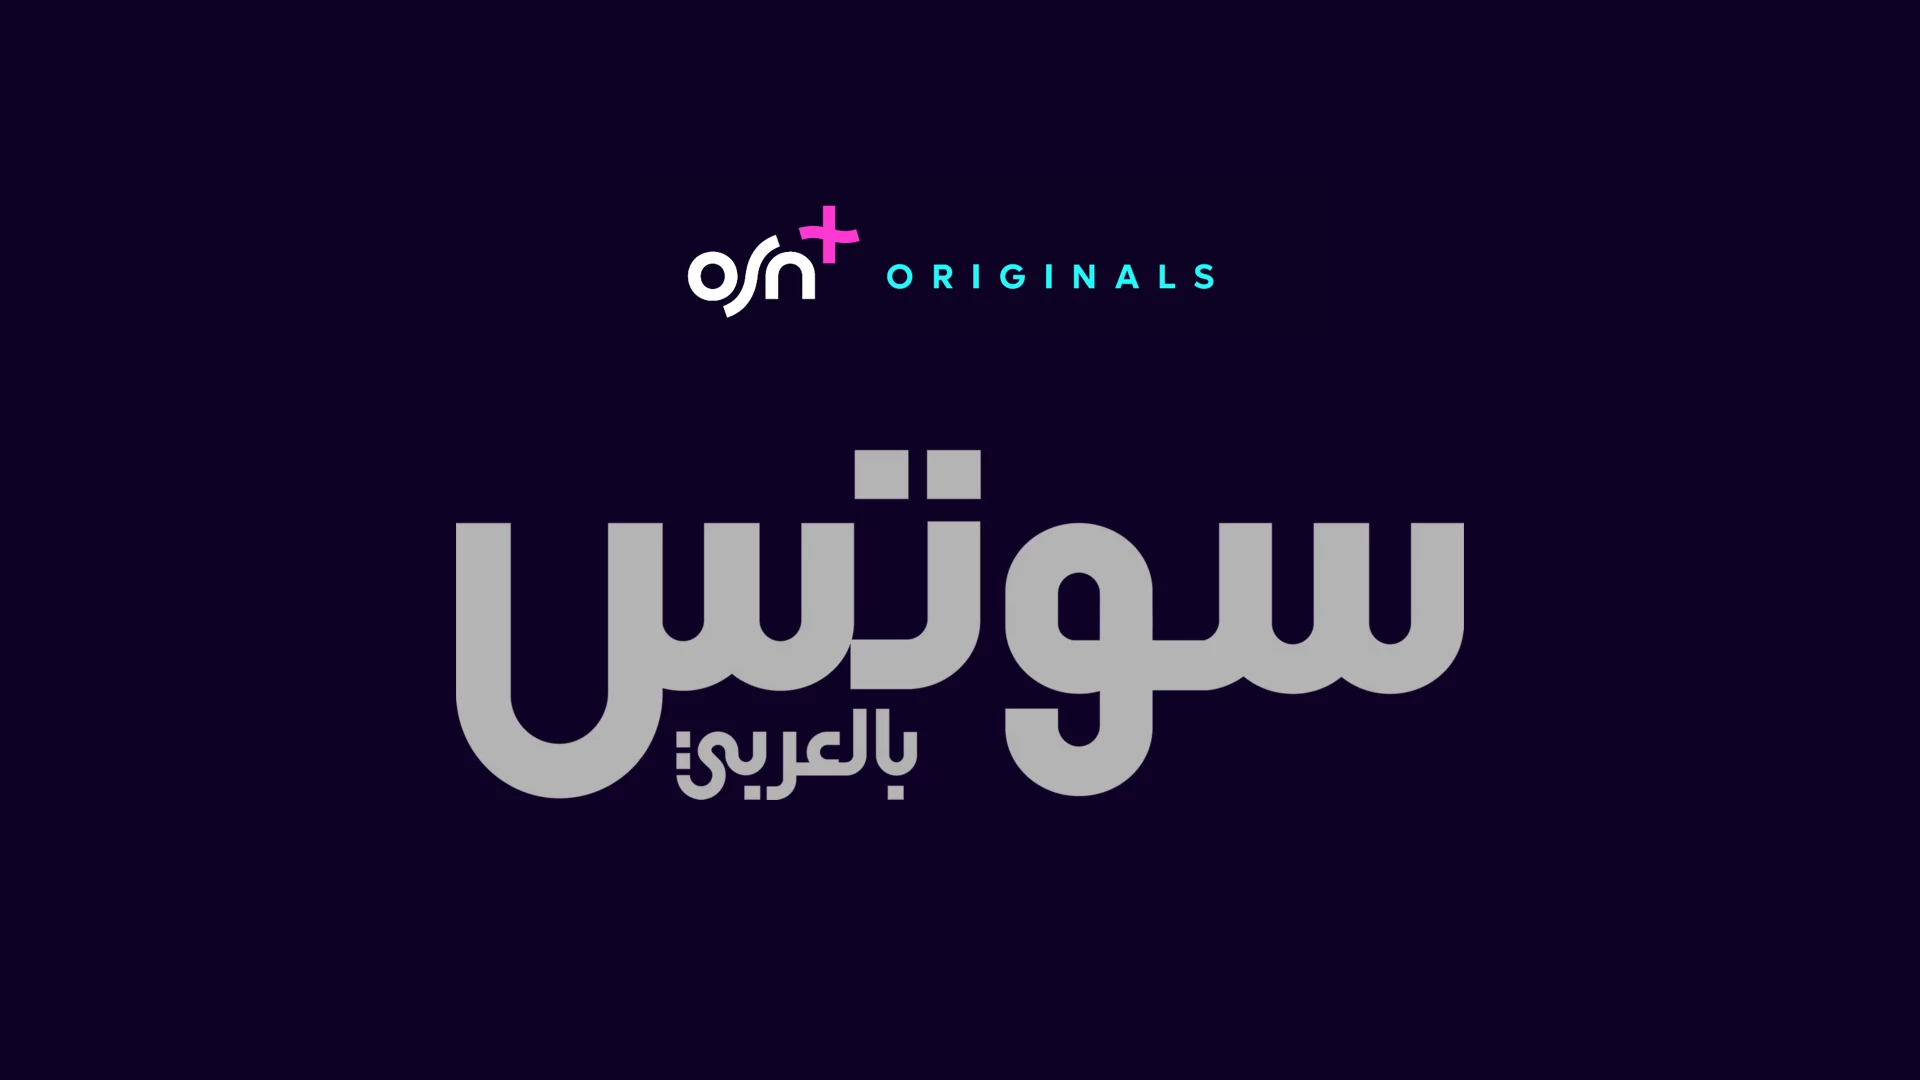 osn-osnplus-logo-originals